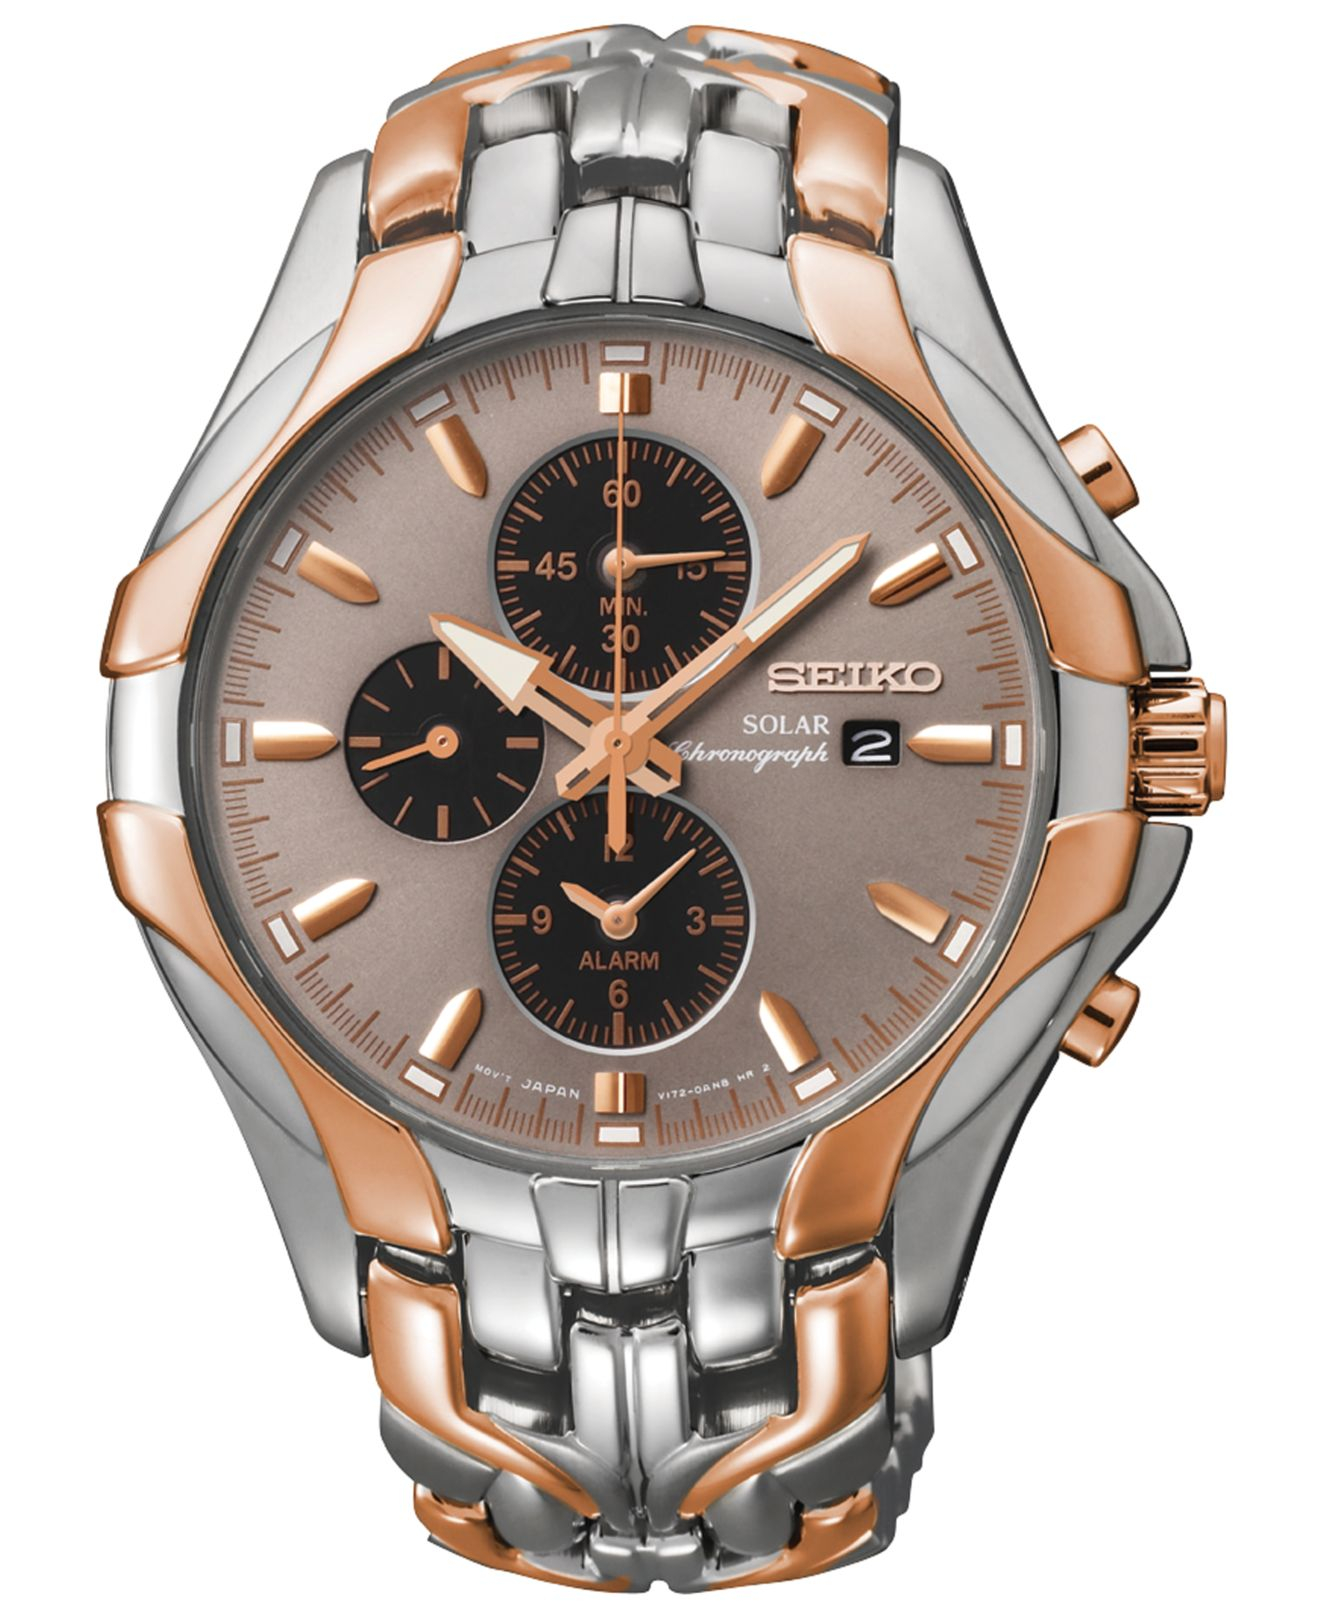 Seiko Men's Chronograph Solar Two-tone Stainless Steel Bracelet Watch ...